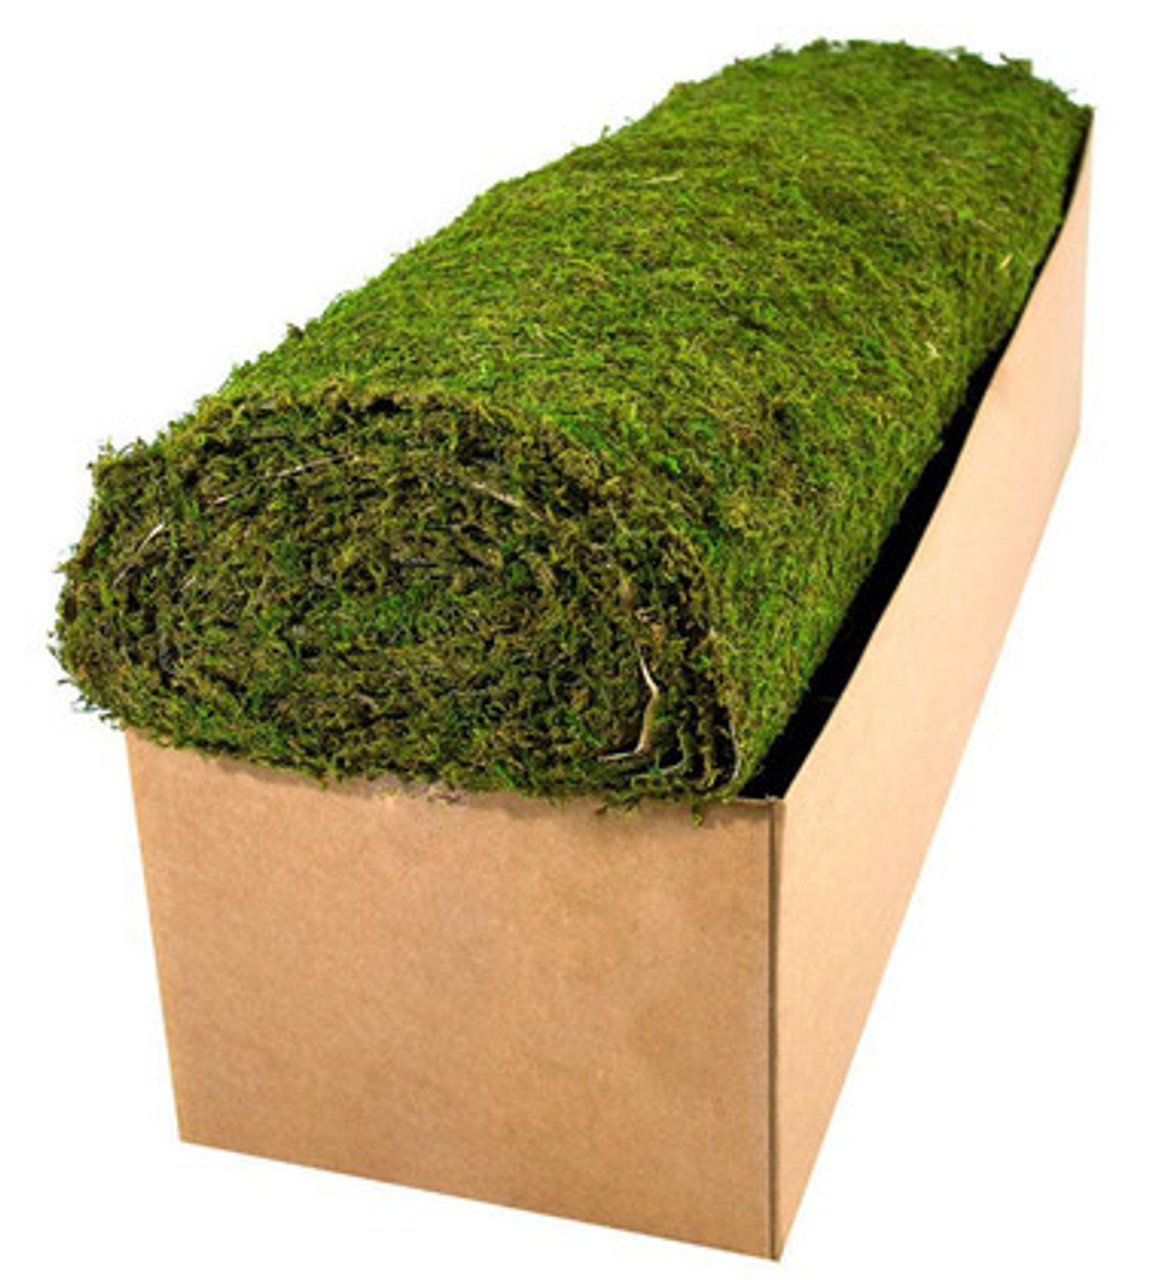 Artificial Green Moss Roll, Faux Moss